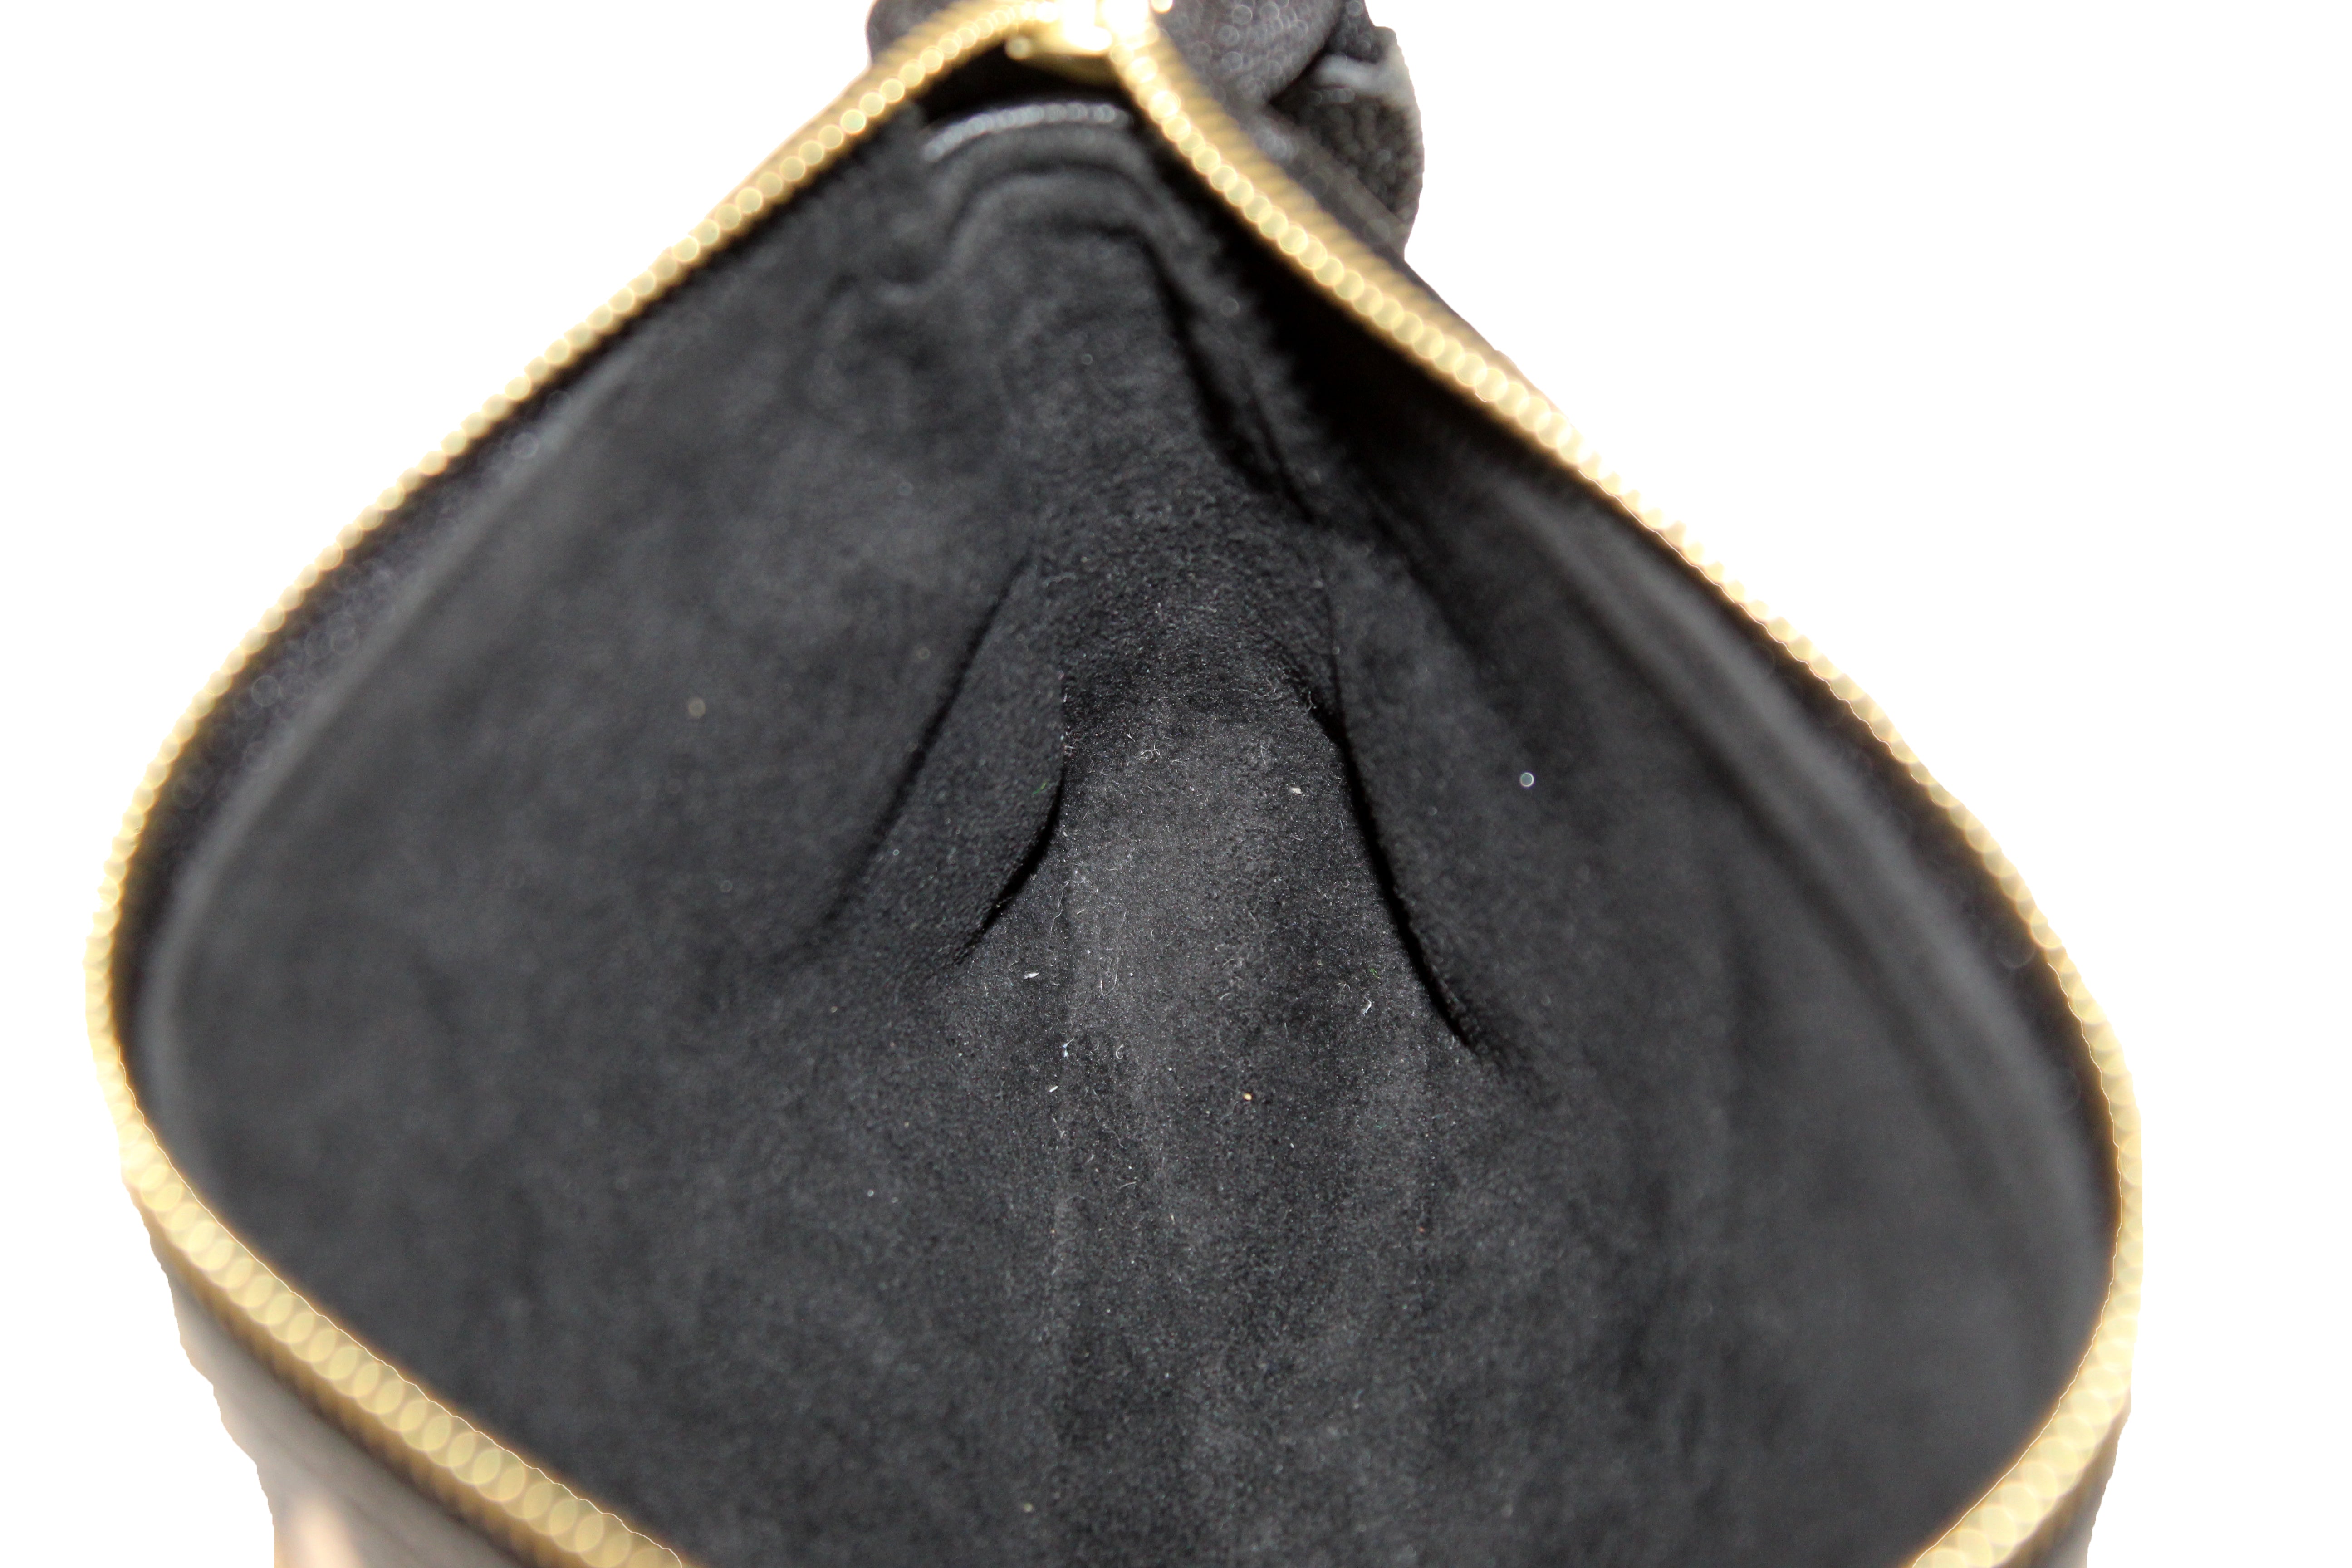 Louis Vuitton Mini Pochette Accessoires Bicolore Black Beige Monogram Empreinte